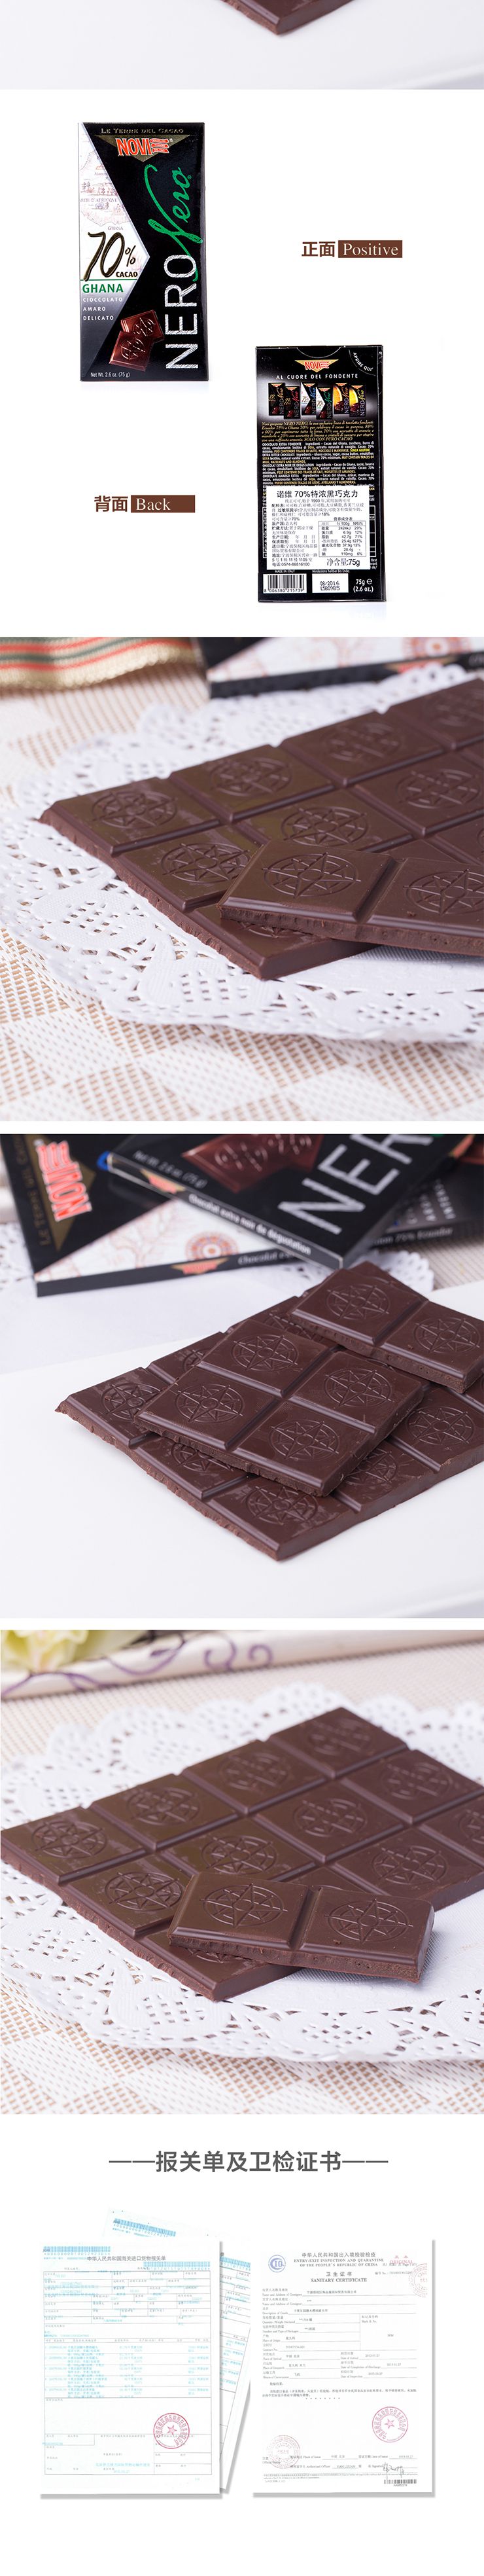 诺维70%特浓黑巧克力 意大利进口  75g 两块装